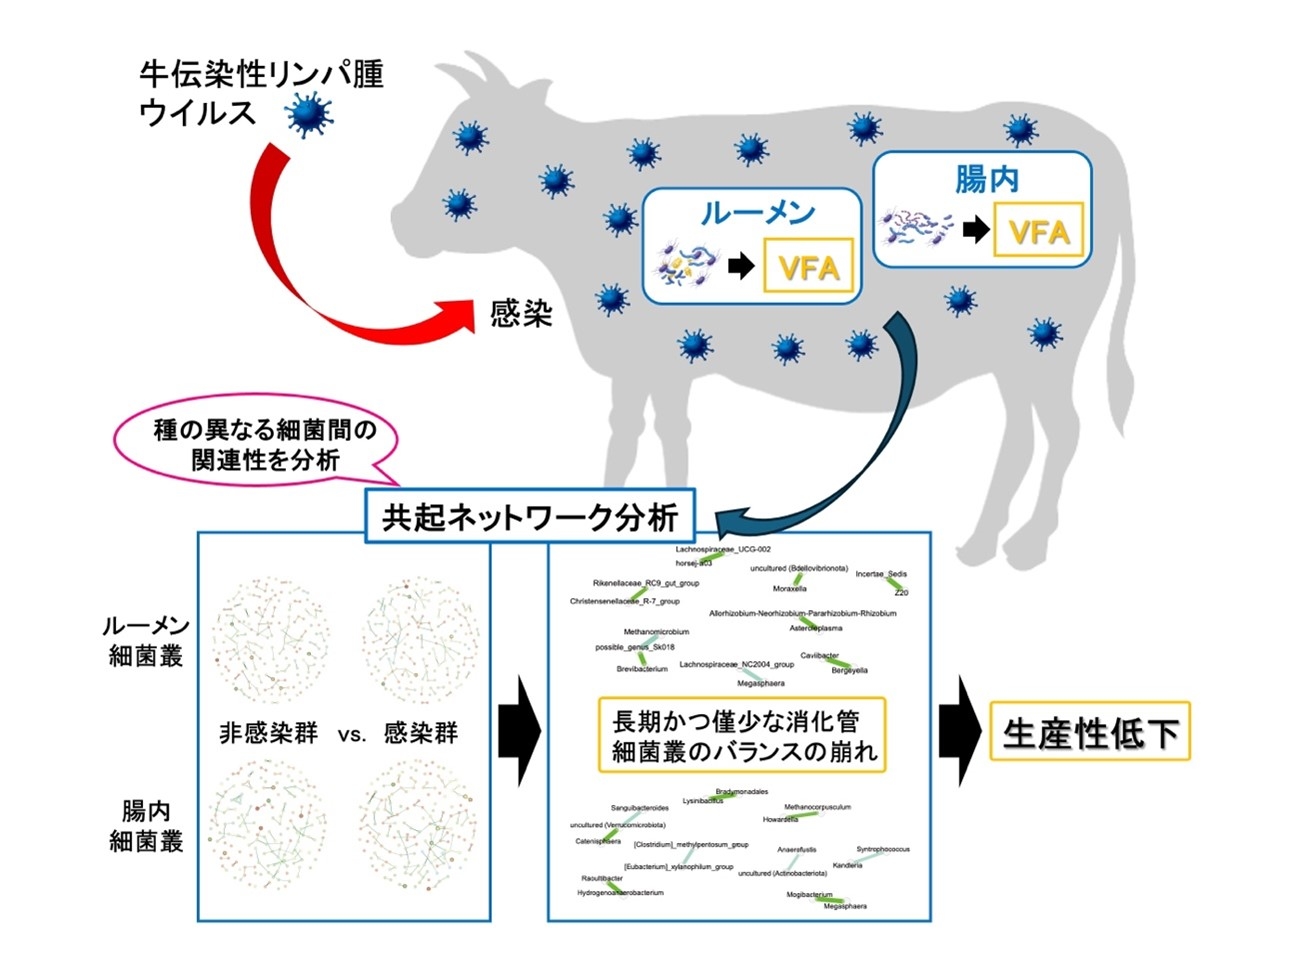 牛伝染性 リンパ腫ウイルス感染研究・共起ネットワーク分析